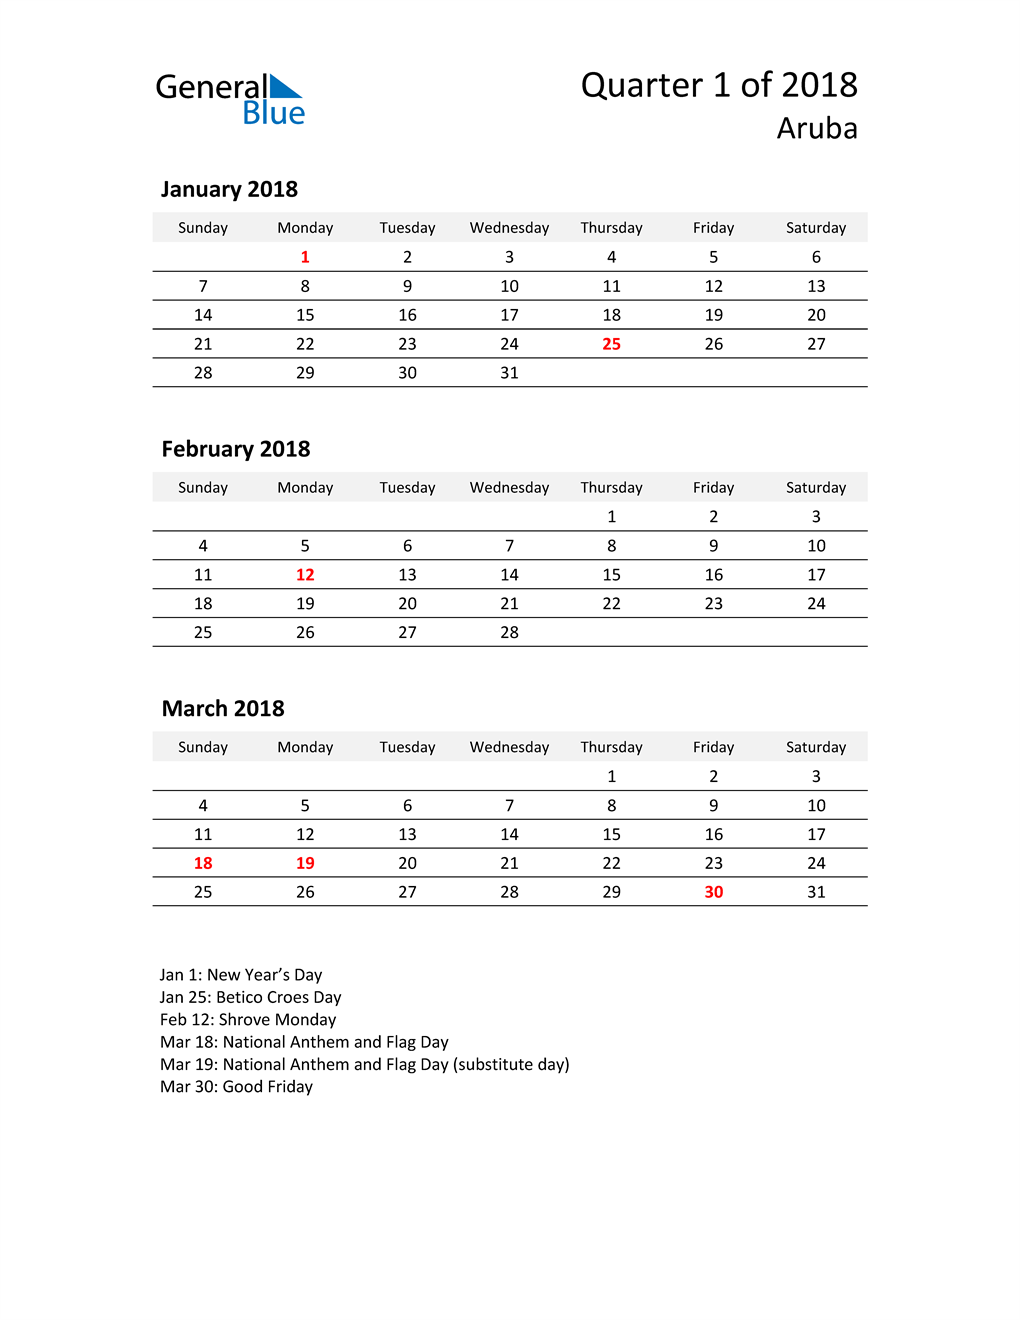  2018 Three-Month Calendar for Aruba